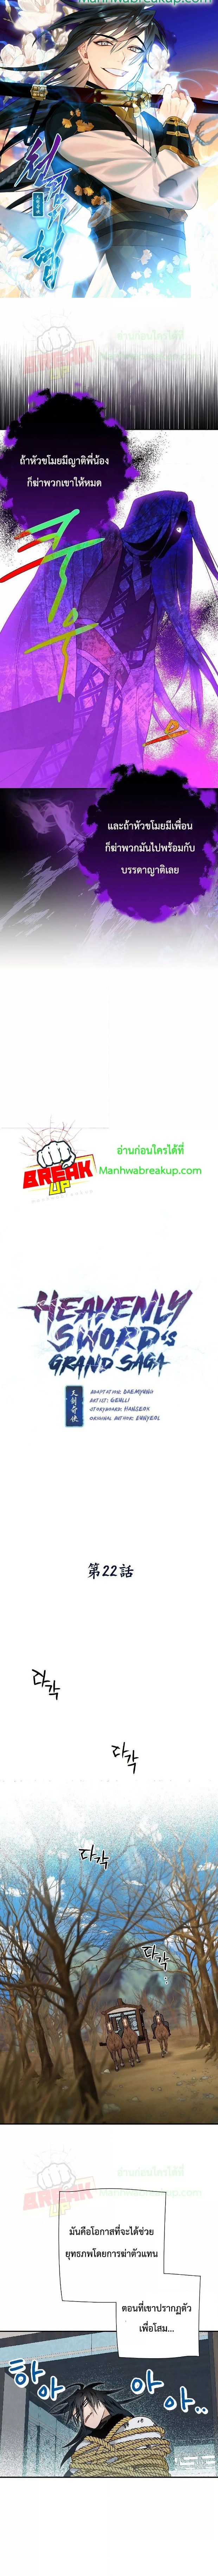 Heavenly Swordโ€s Grand Saga 22 (1)